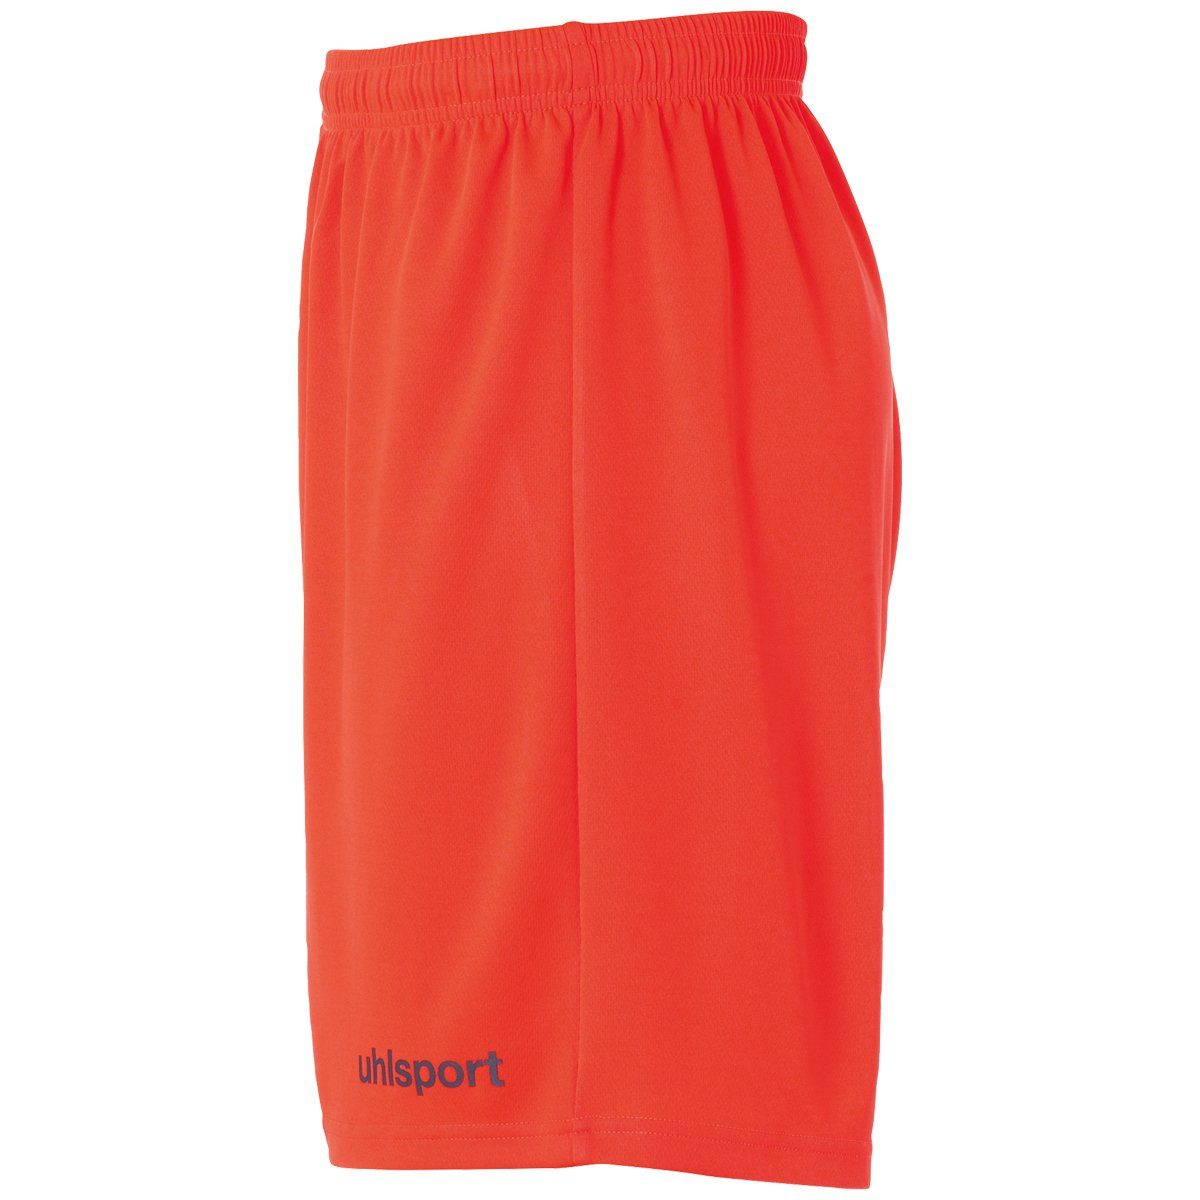 Shorts uhlsport rot/marine fluo uhlsport Shorts